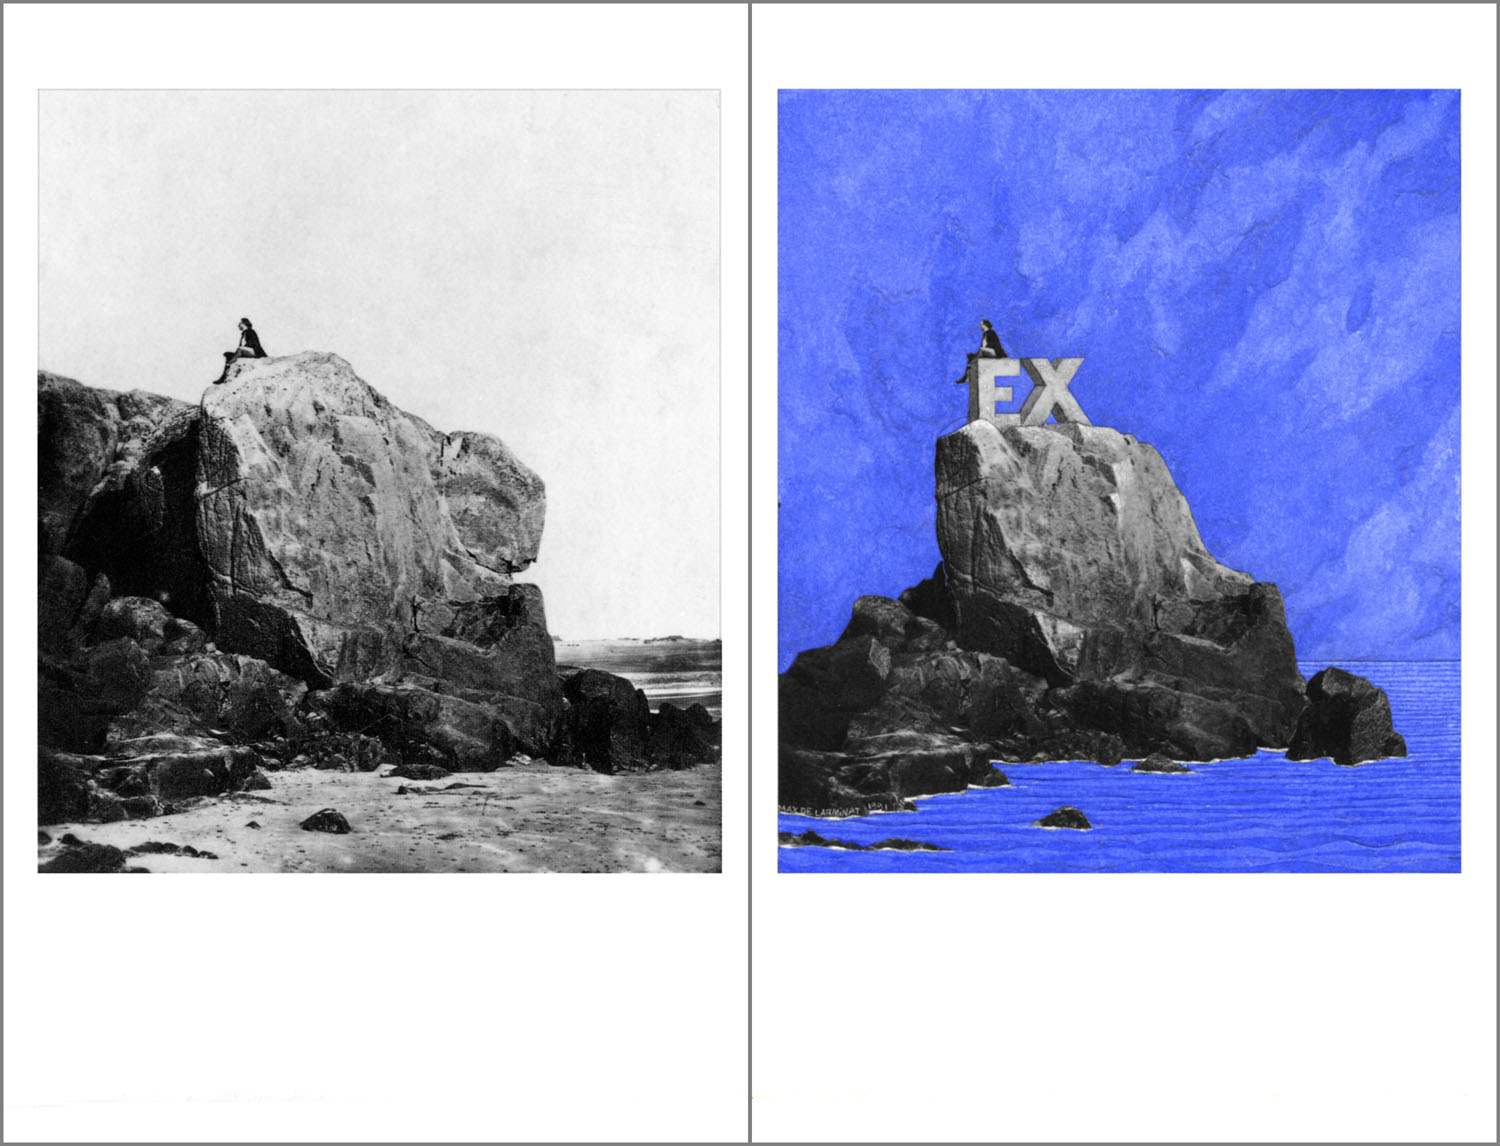 Exil. (EX-île). Ce rébus réalisé par Max de Larminat à partir d’une carte postale détournée de Charles Hugo représentant initialement Victor Hugo en exil à Jersey, assis au sommet du « Rocher des Proscrits ». Pour les besoins de ce rébus, j’ai largement retaillé le rocher pour lui donner l’aspect d’une ile. J’ai aussi sculpté un “E“ et un “X“ dans la pierre juste en dessous de la silhouette de Victor Hugo, transformant ainsi le site en une sorte de monument commémoratif de l’exil volontaire du poète pendant le Second Empire.